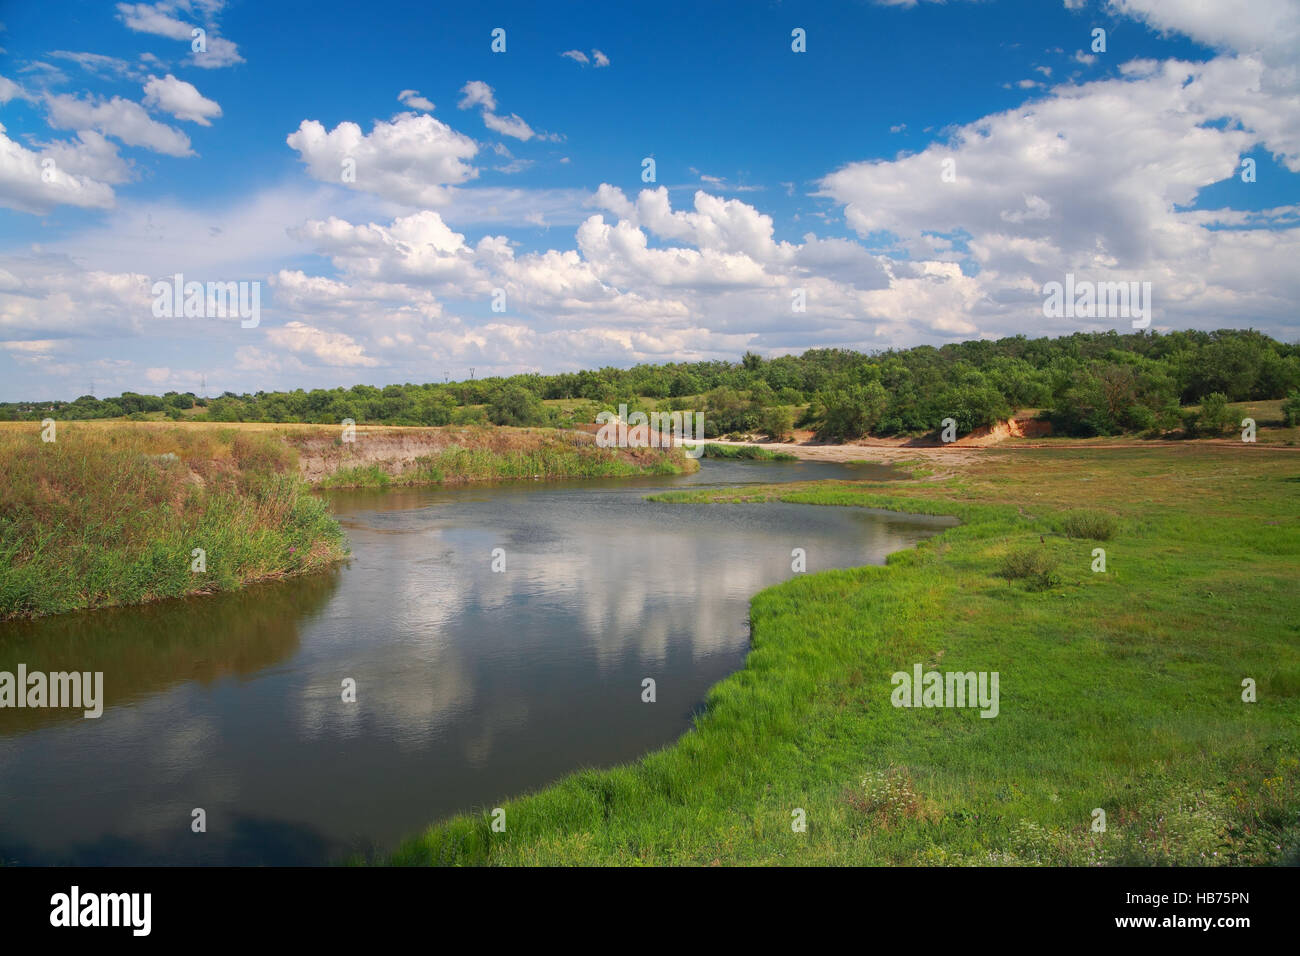 Paesaggio di campagna, river, prato e il cielo con le nuvole Foto Stock